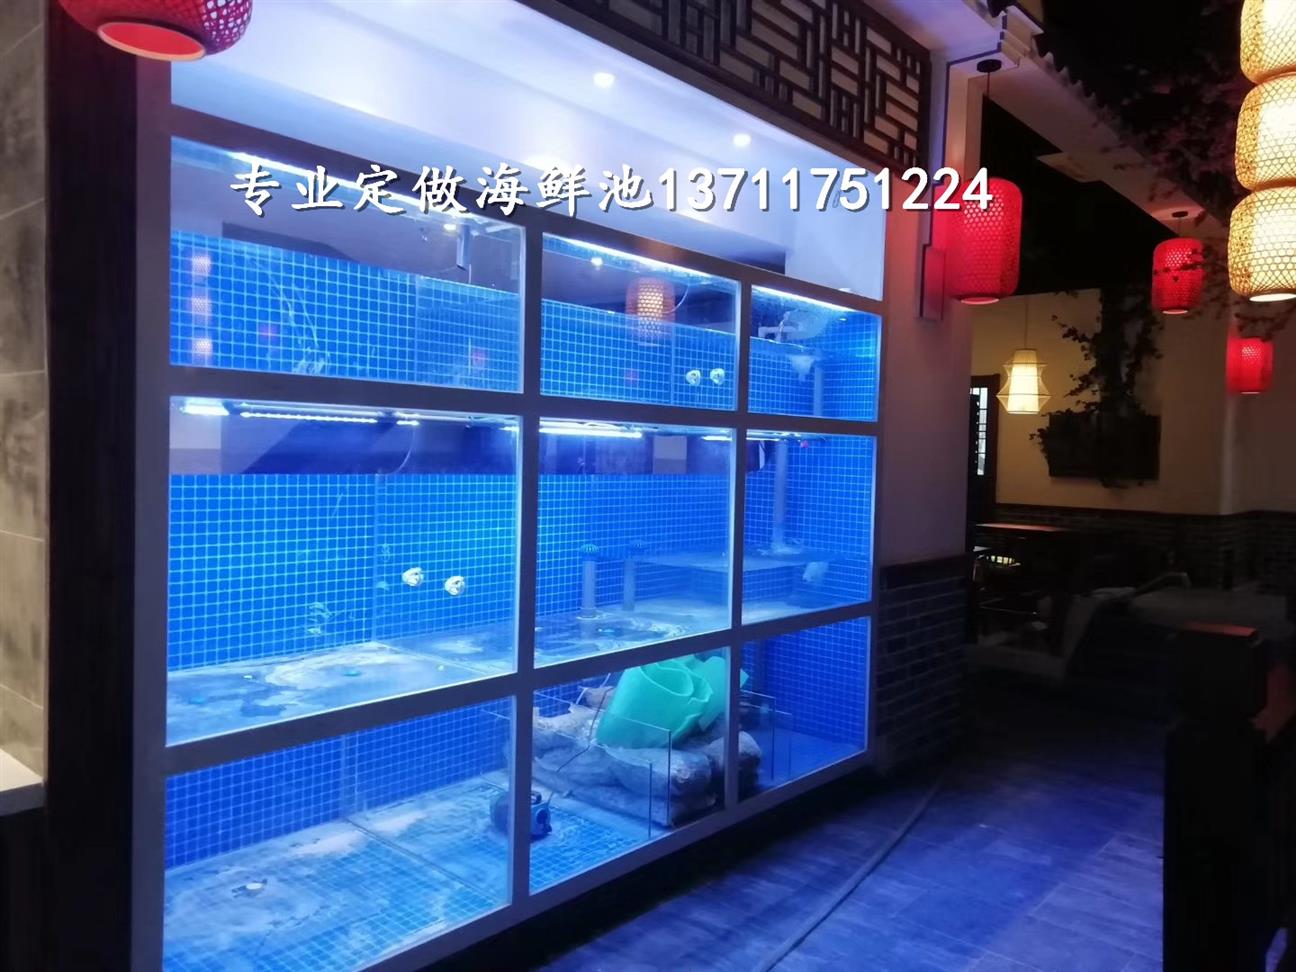 广州林和玻璃海鲜池电话